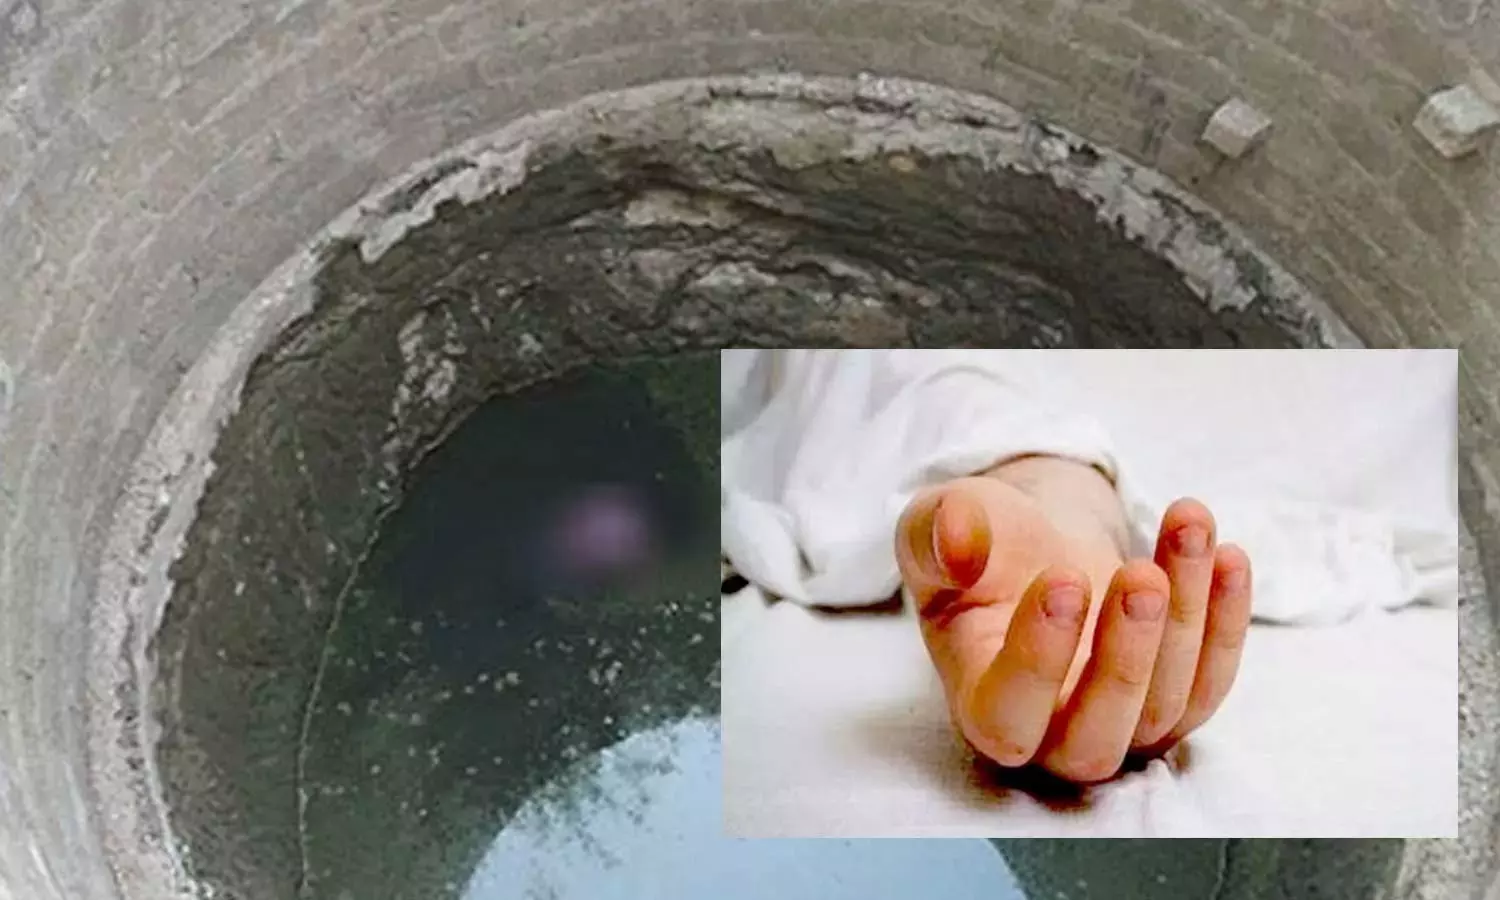 கிணற்றில் குதித்து வாலிபர் தற்கொலை | Tirupathur News A teenager committed  suicide by jumping into a well